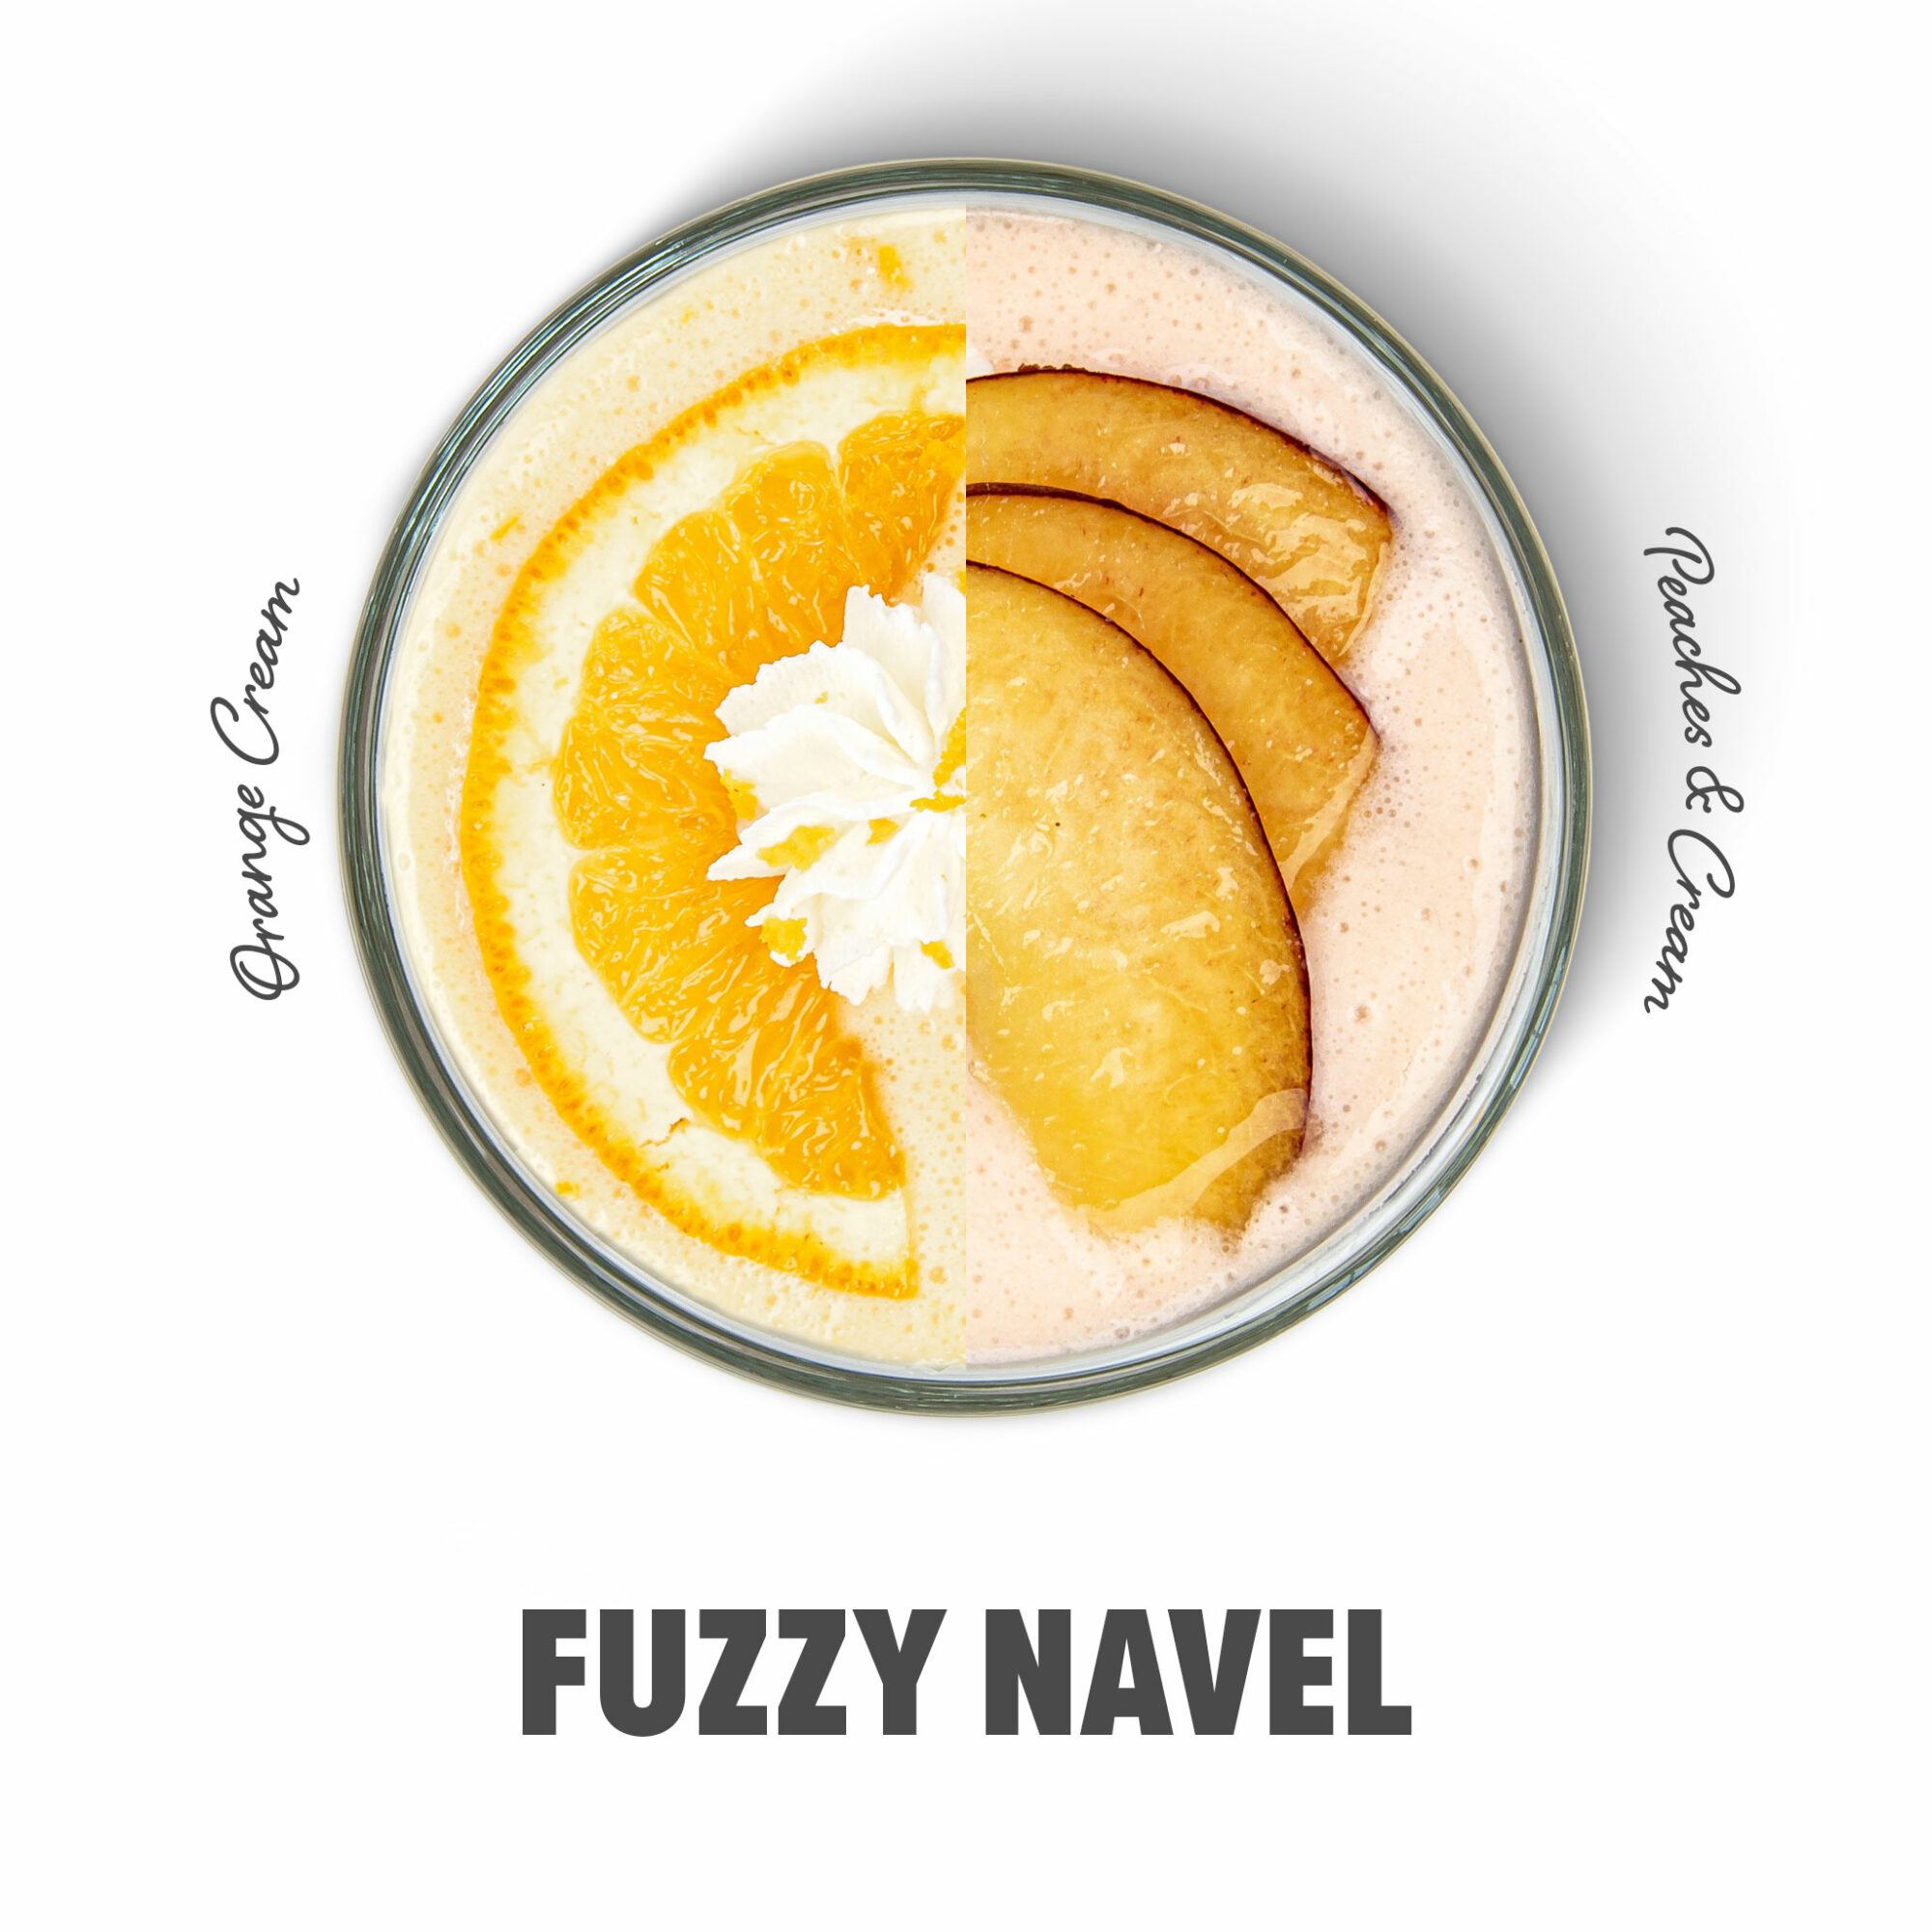 Fuzzy Navel shake